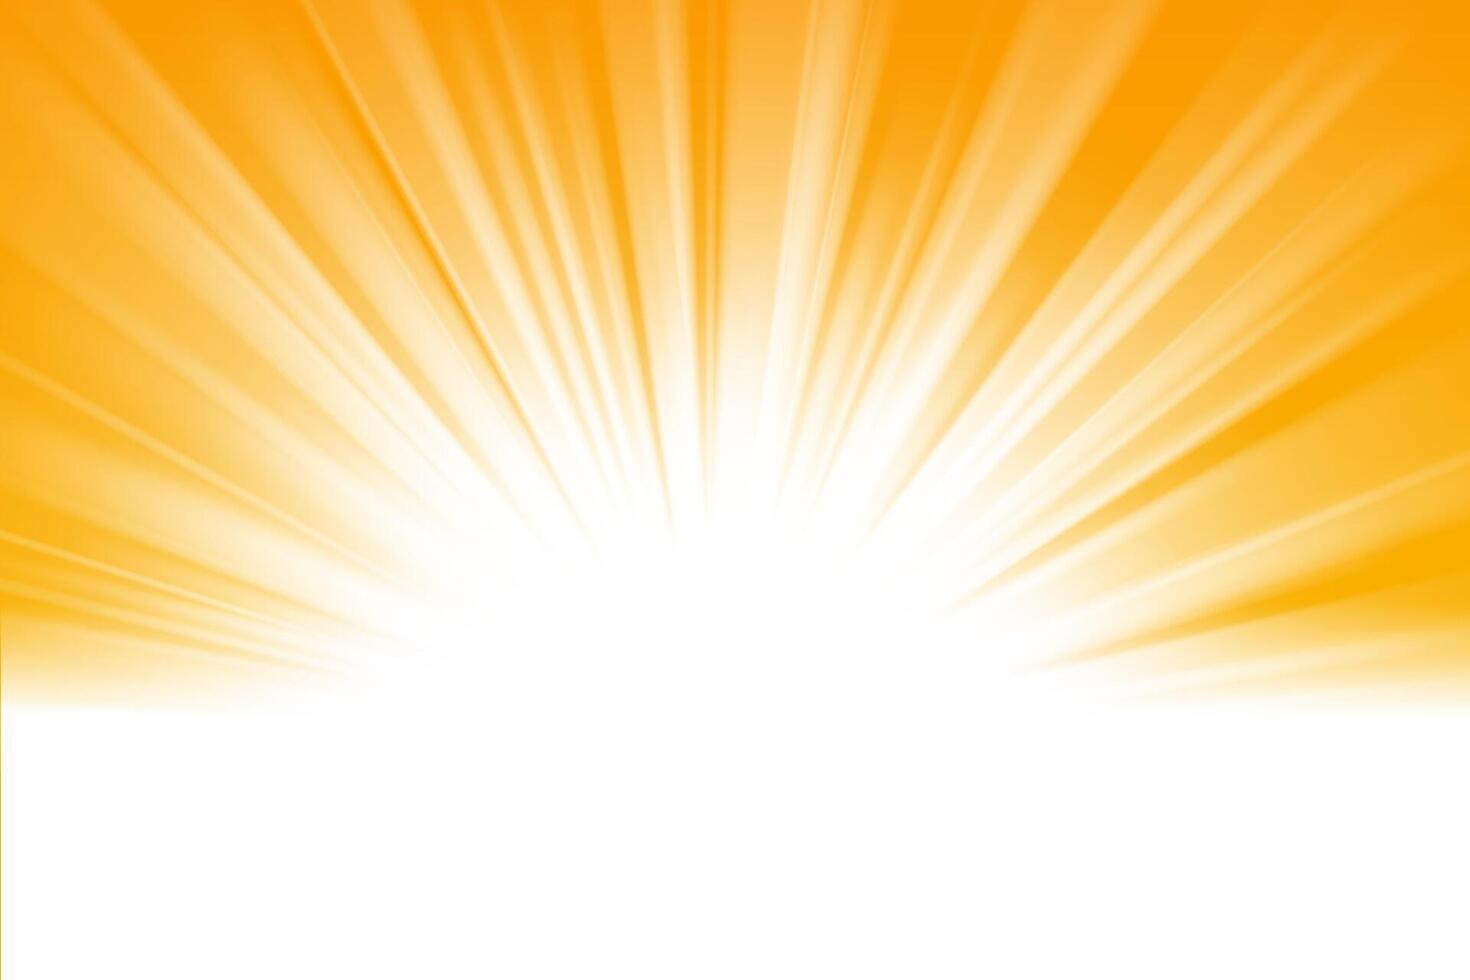 White Sun Light On Gold Background, Vector Illustration